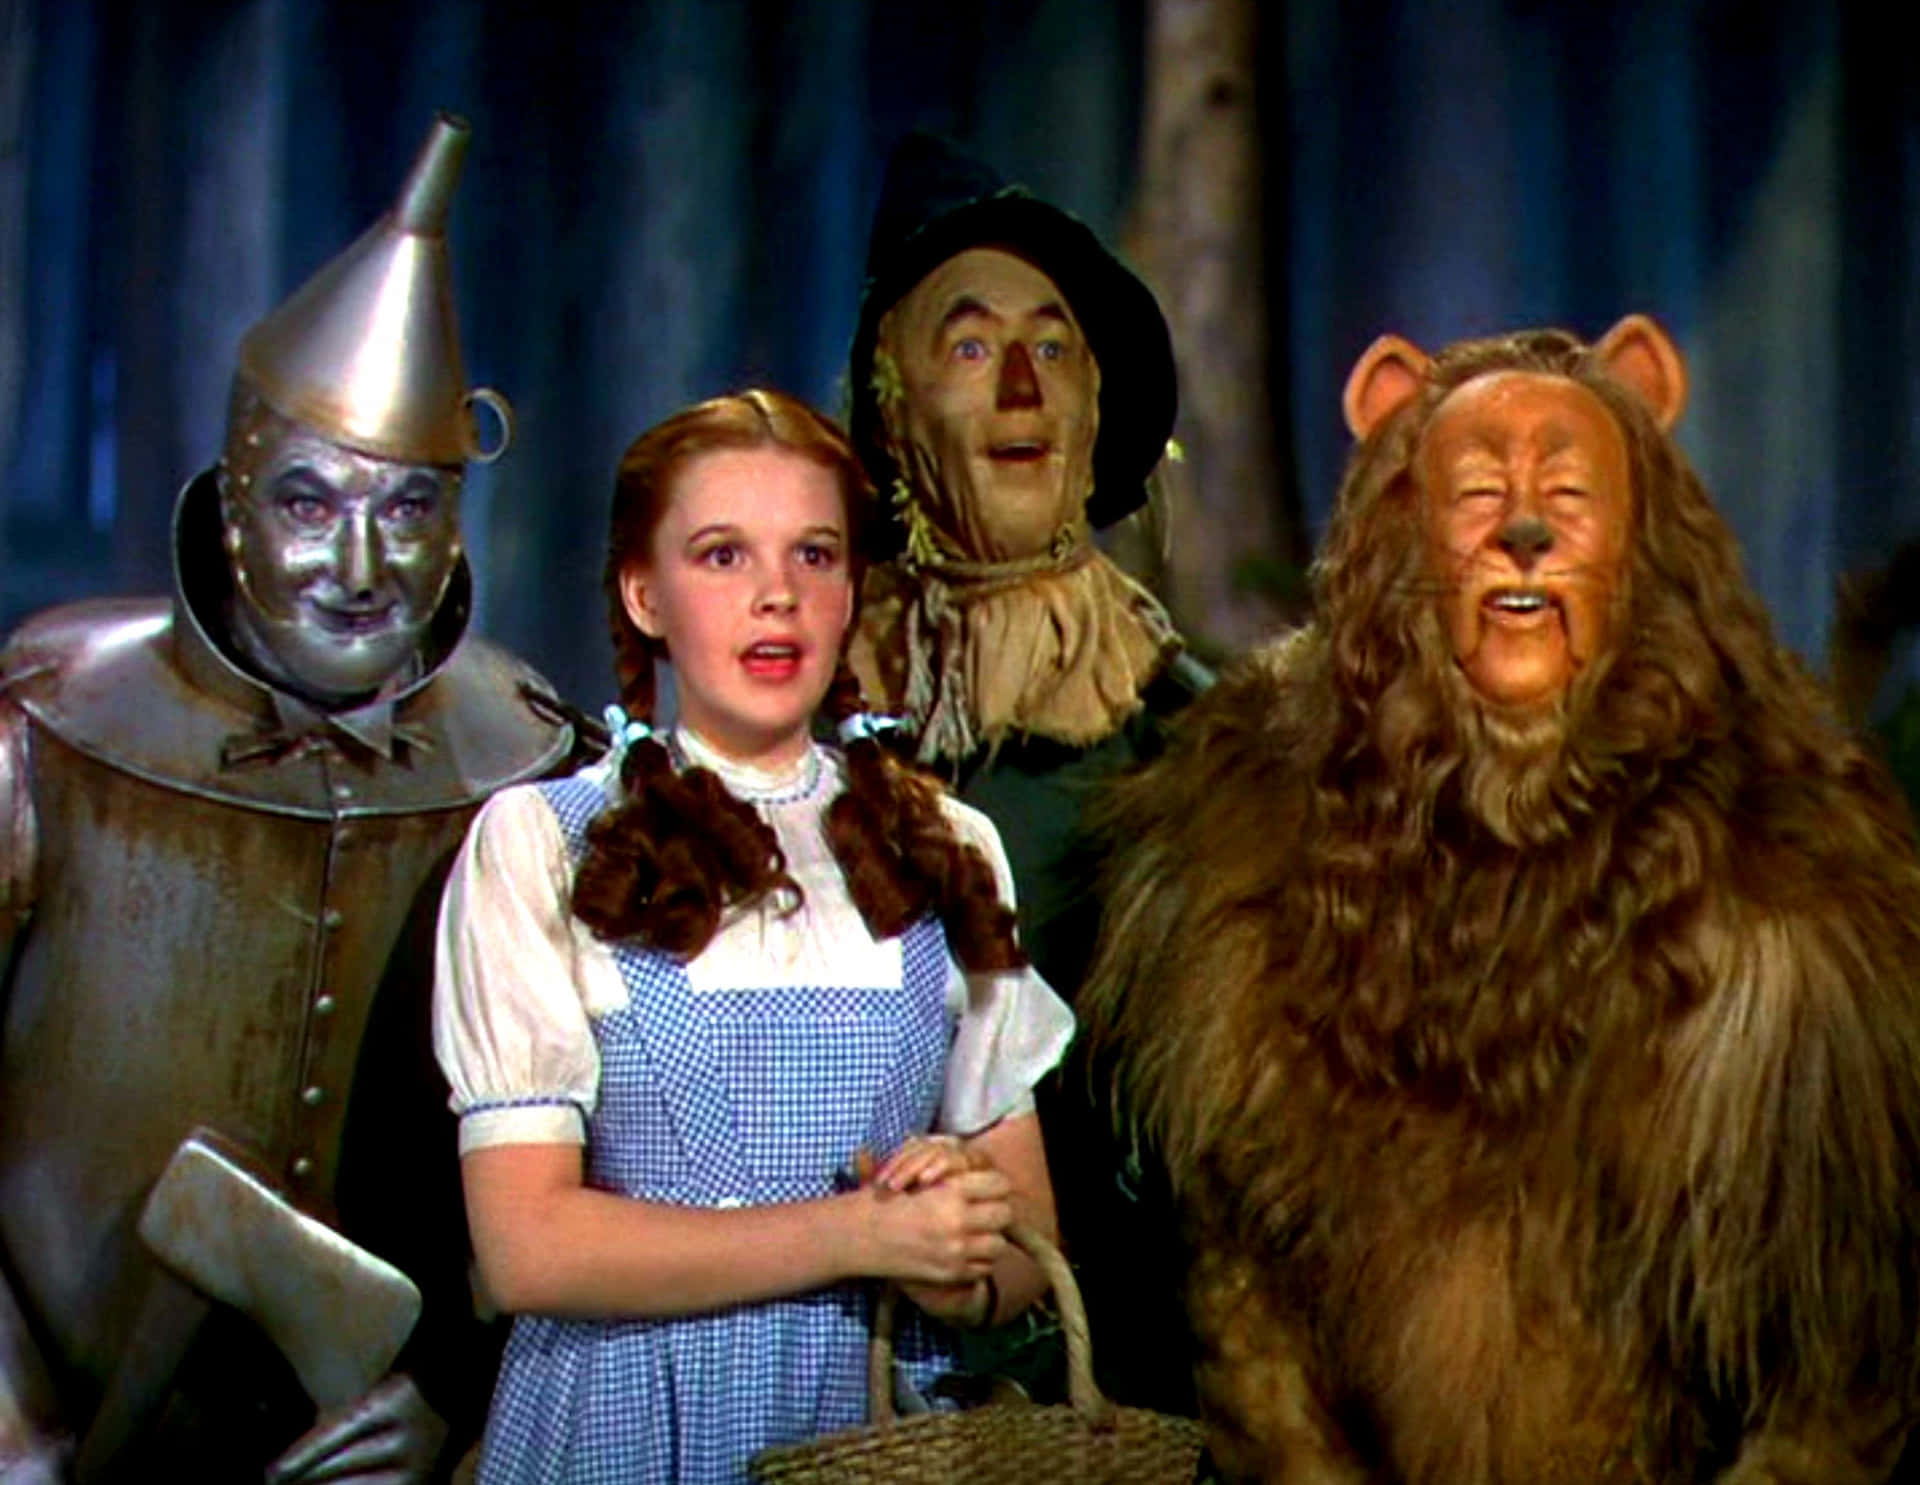 Hintergrundbildvon Der Zauberer Von Oz.